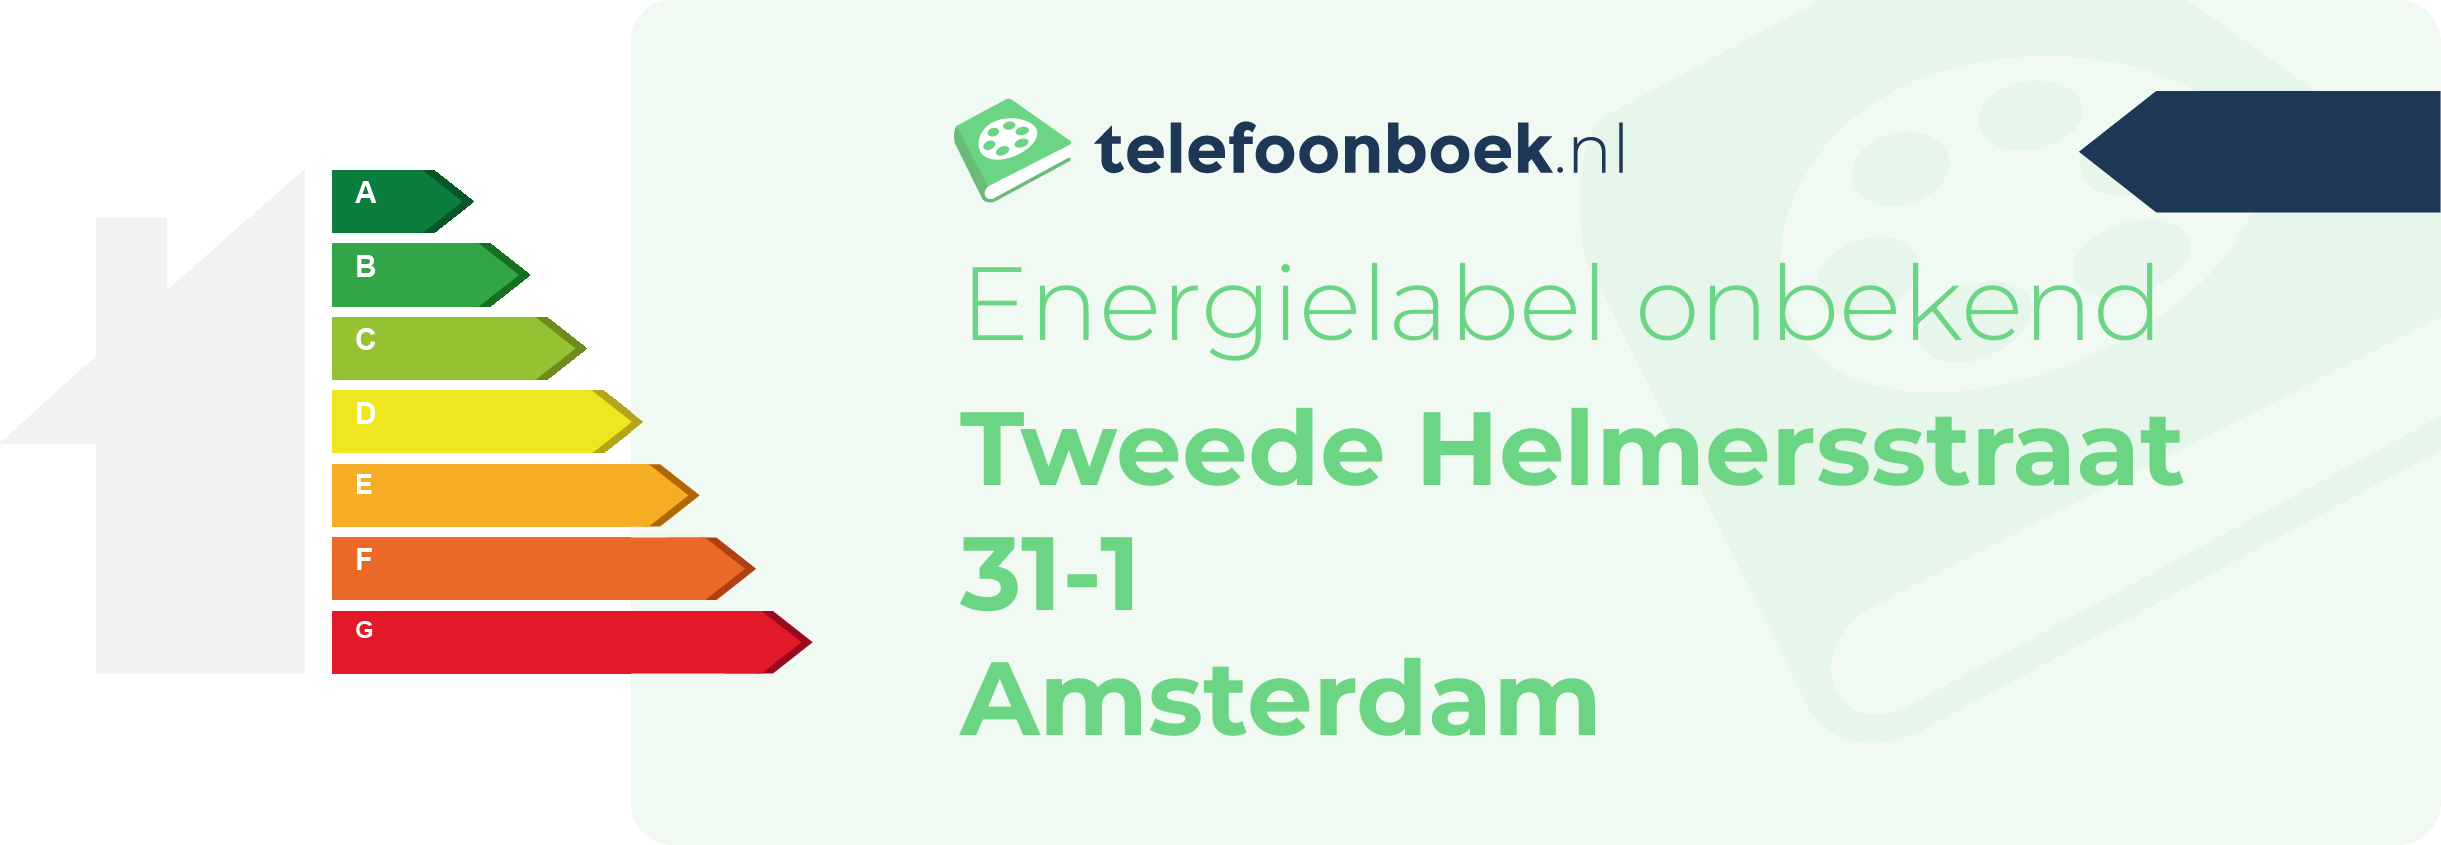 Energielabel Tweede Helmersstraat 31-1 Amsterdam